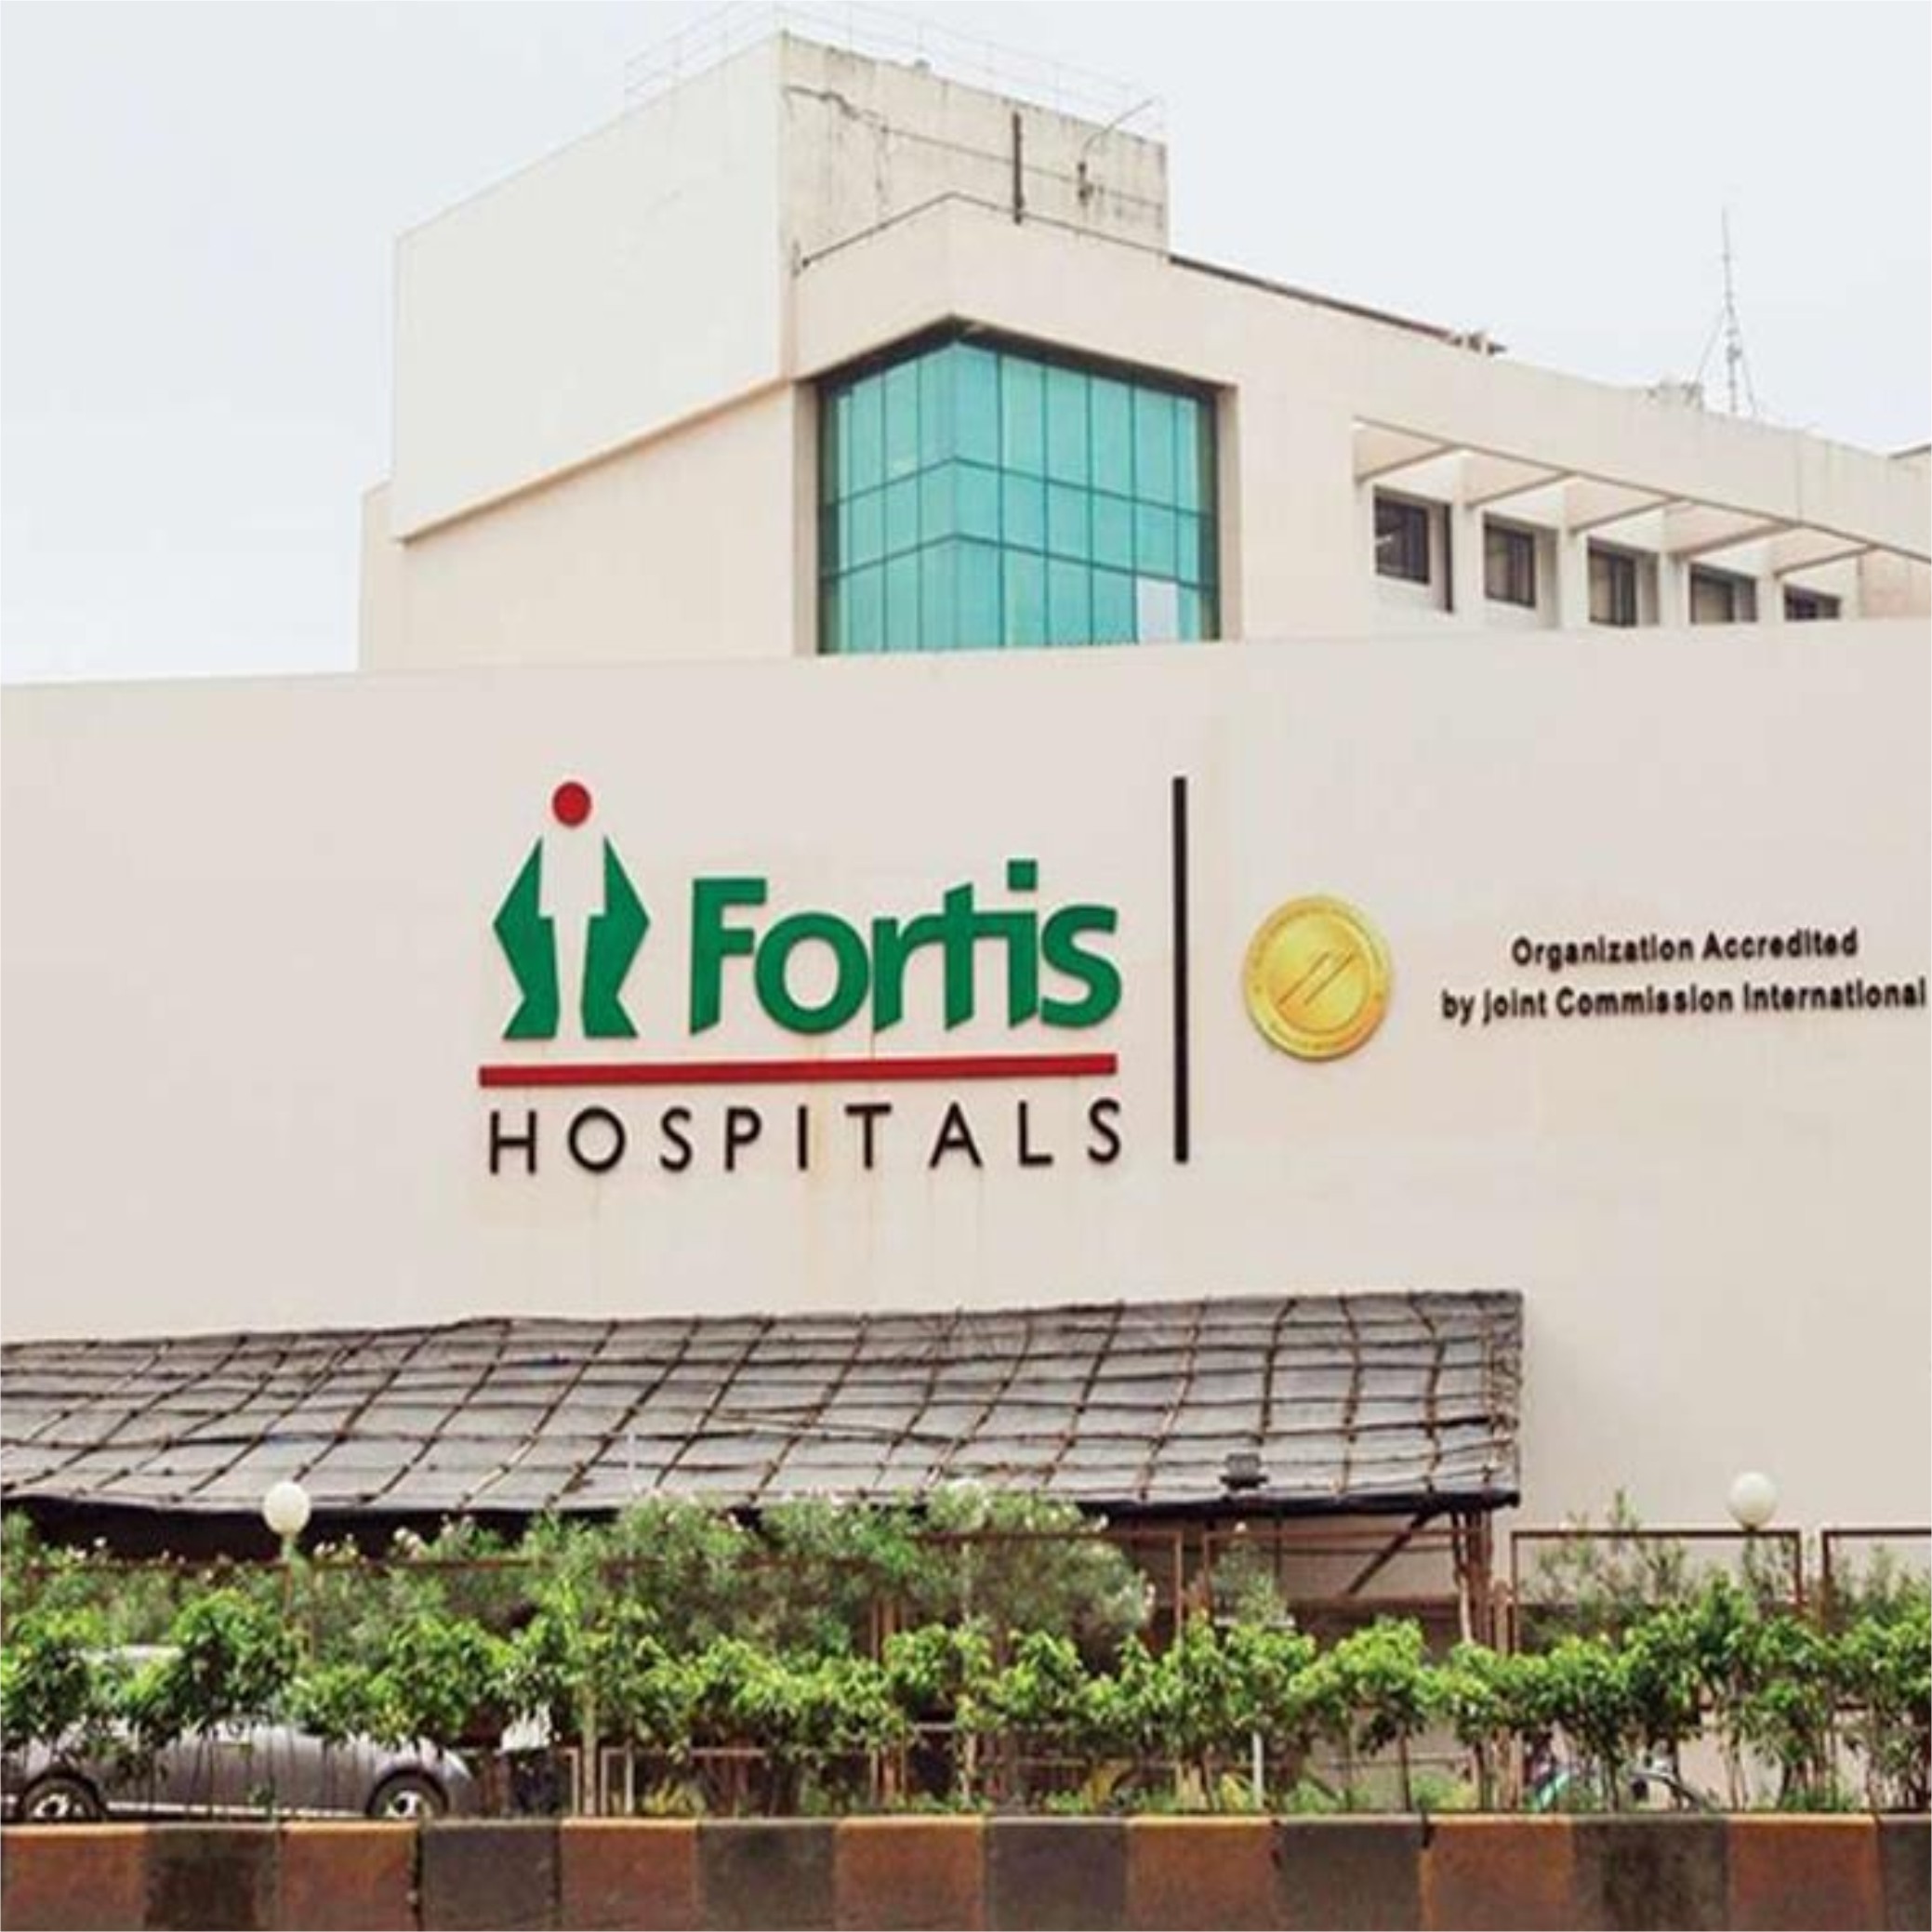 Fortis Hospital Mulund Mumbai India